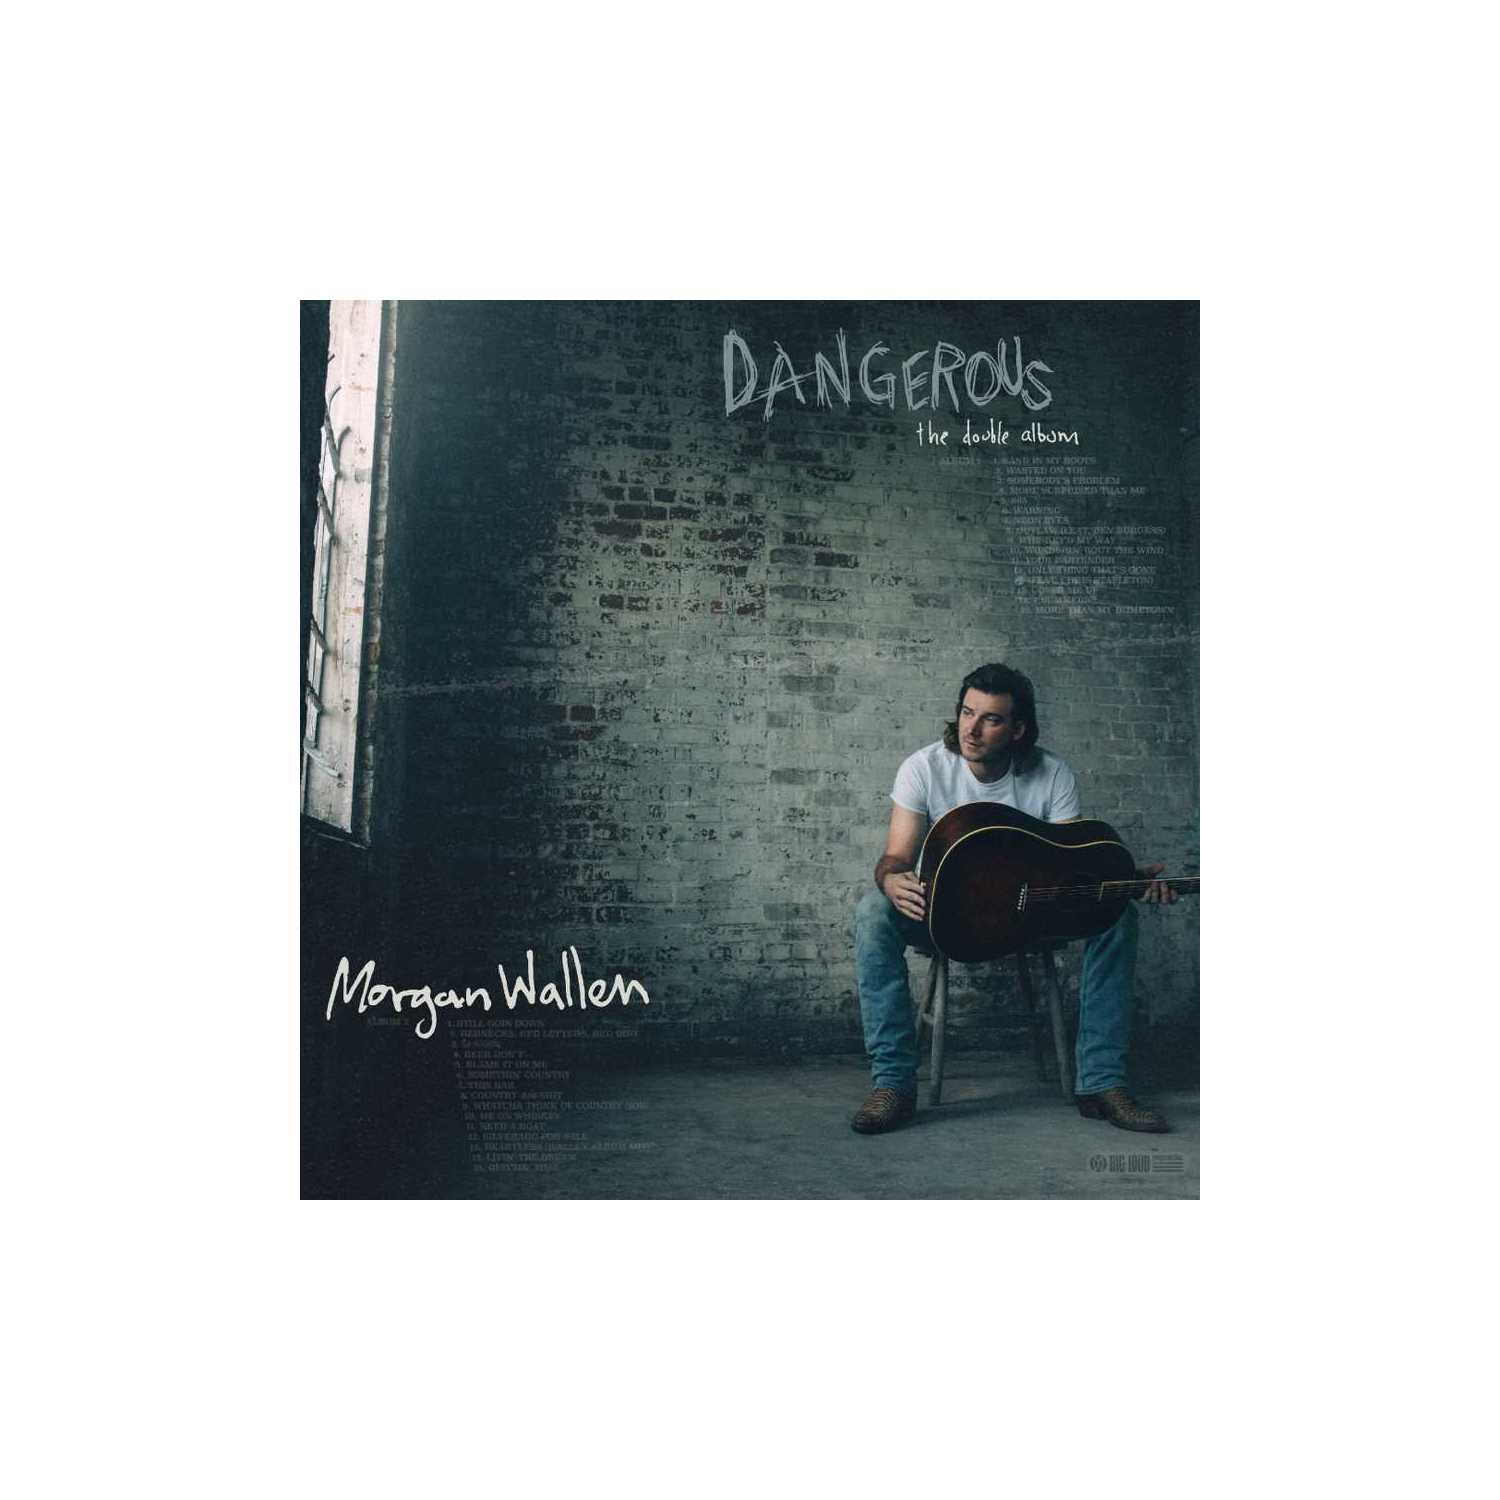 DANGEROUS:THE DOUBLE -- MORGAN WALLEN